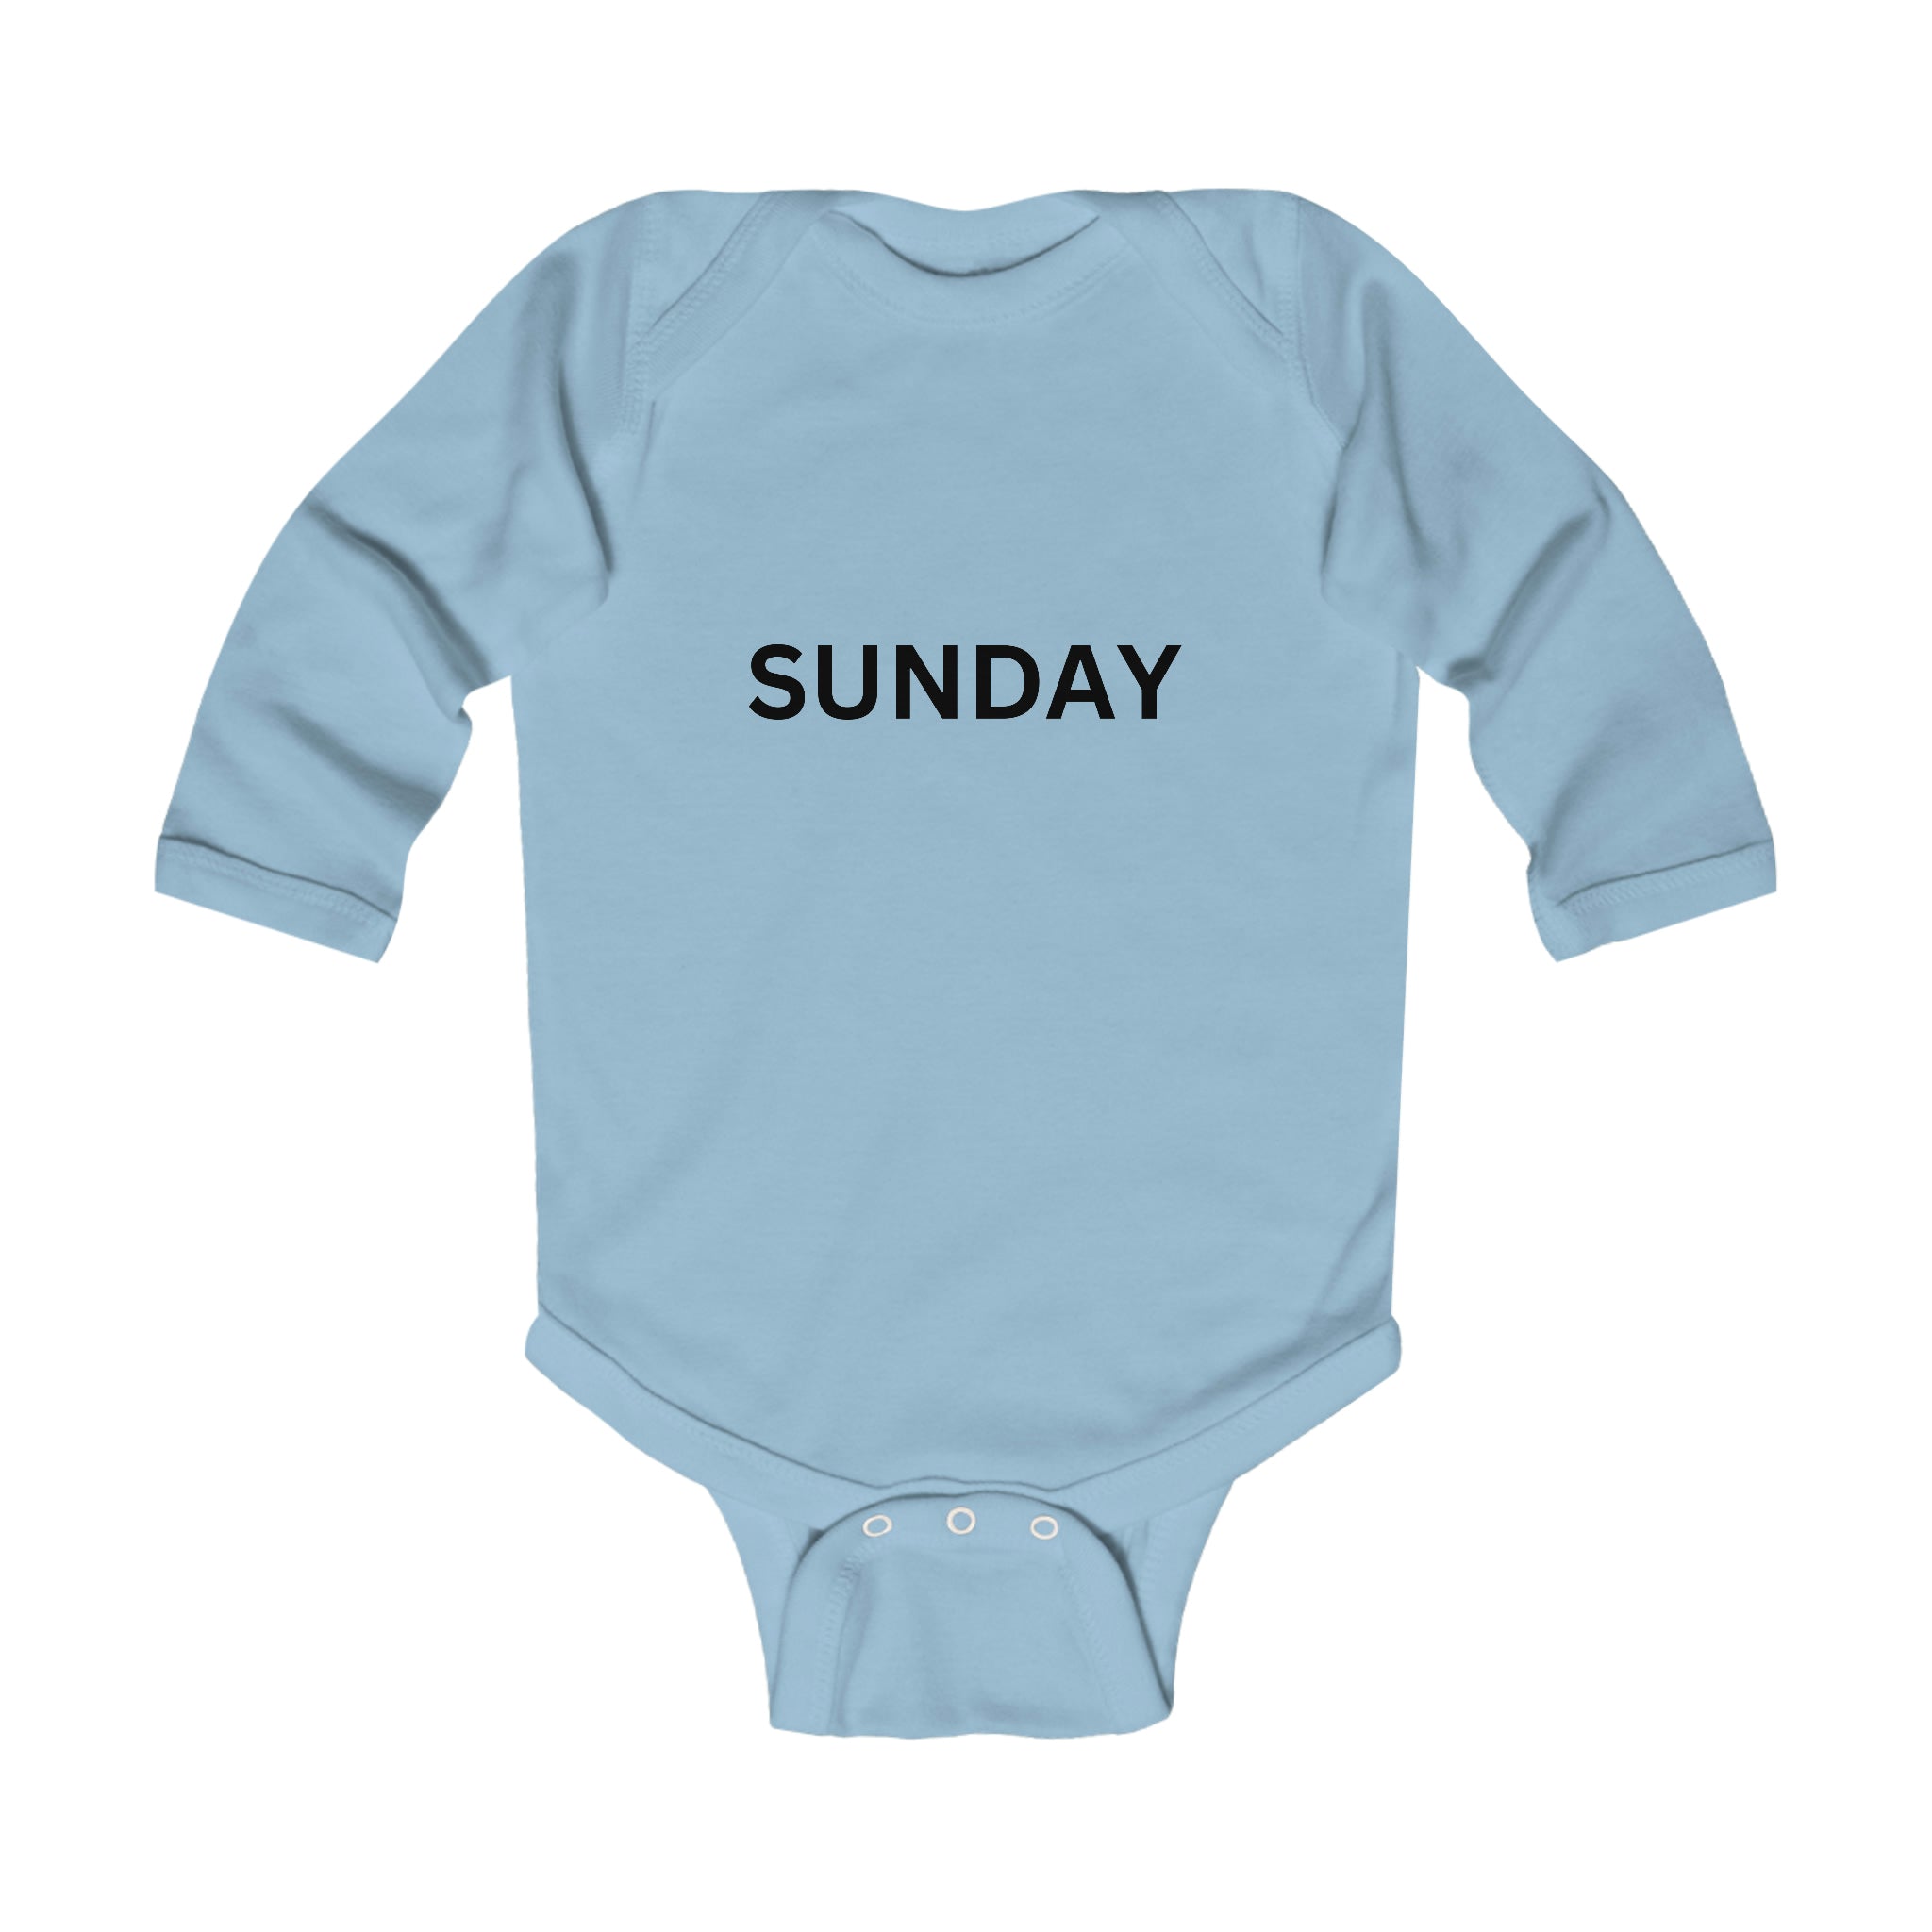 Sunday Long Sleeve Baby Bodysuit